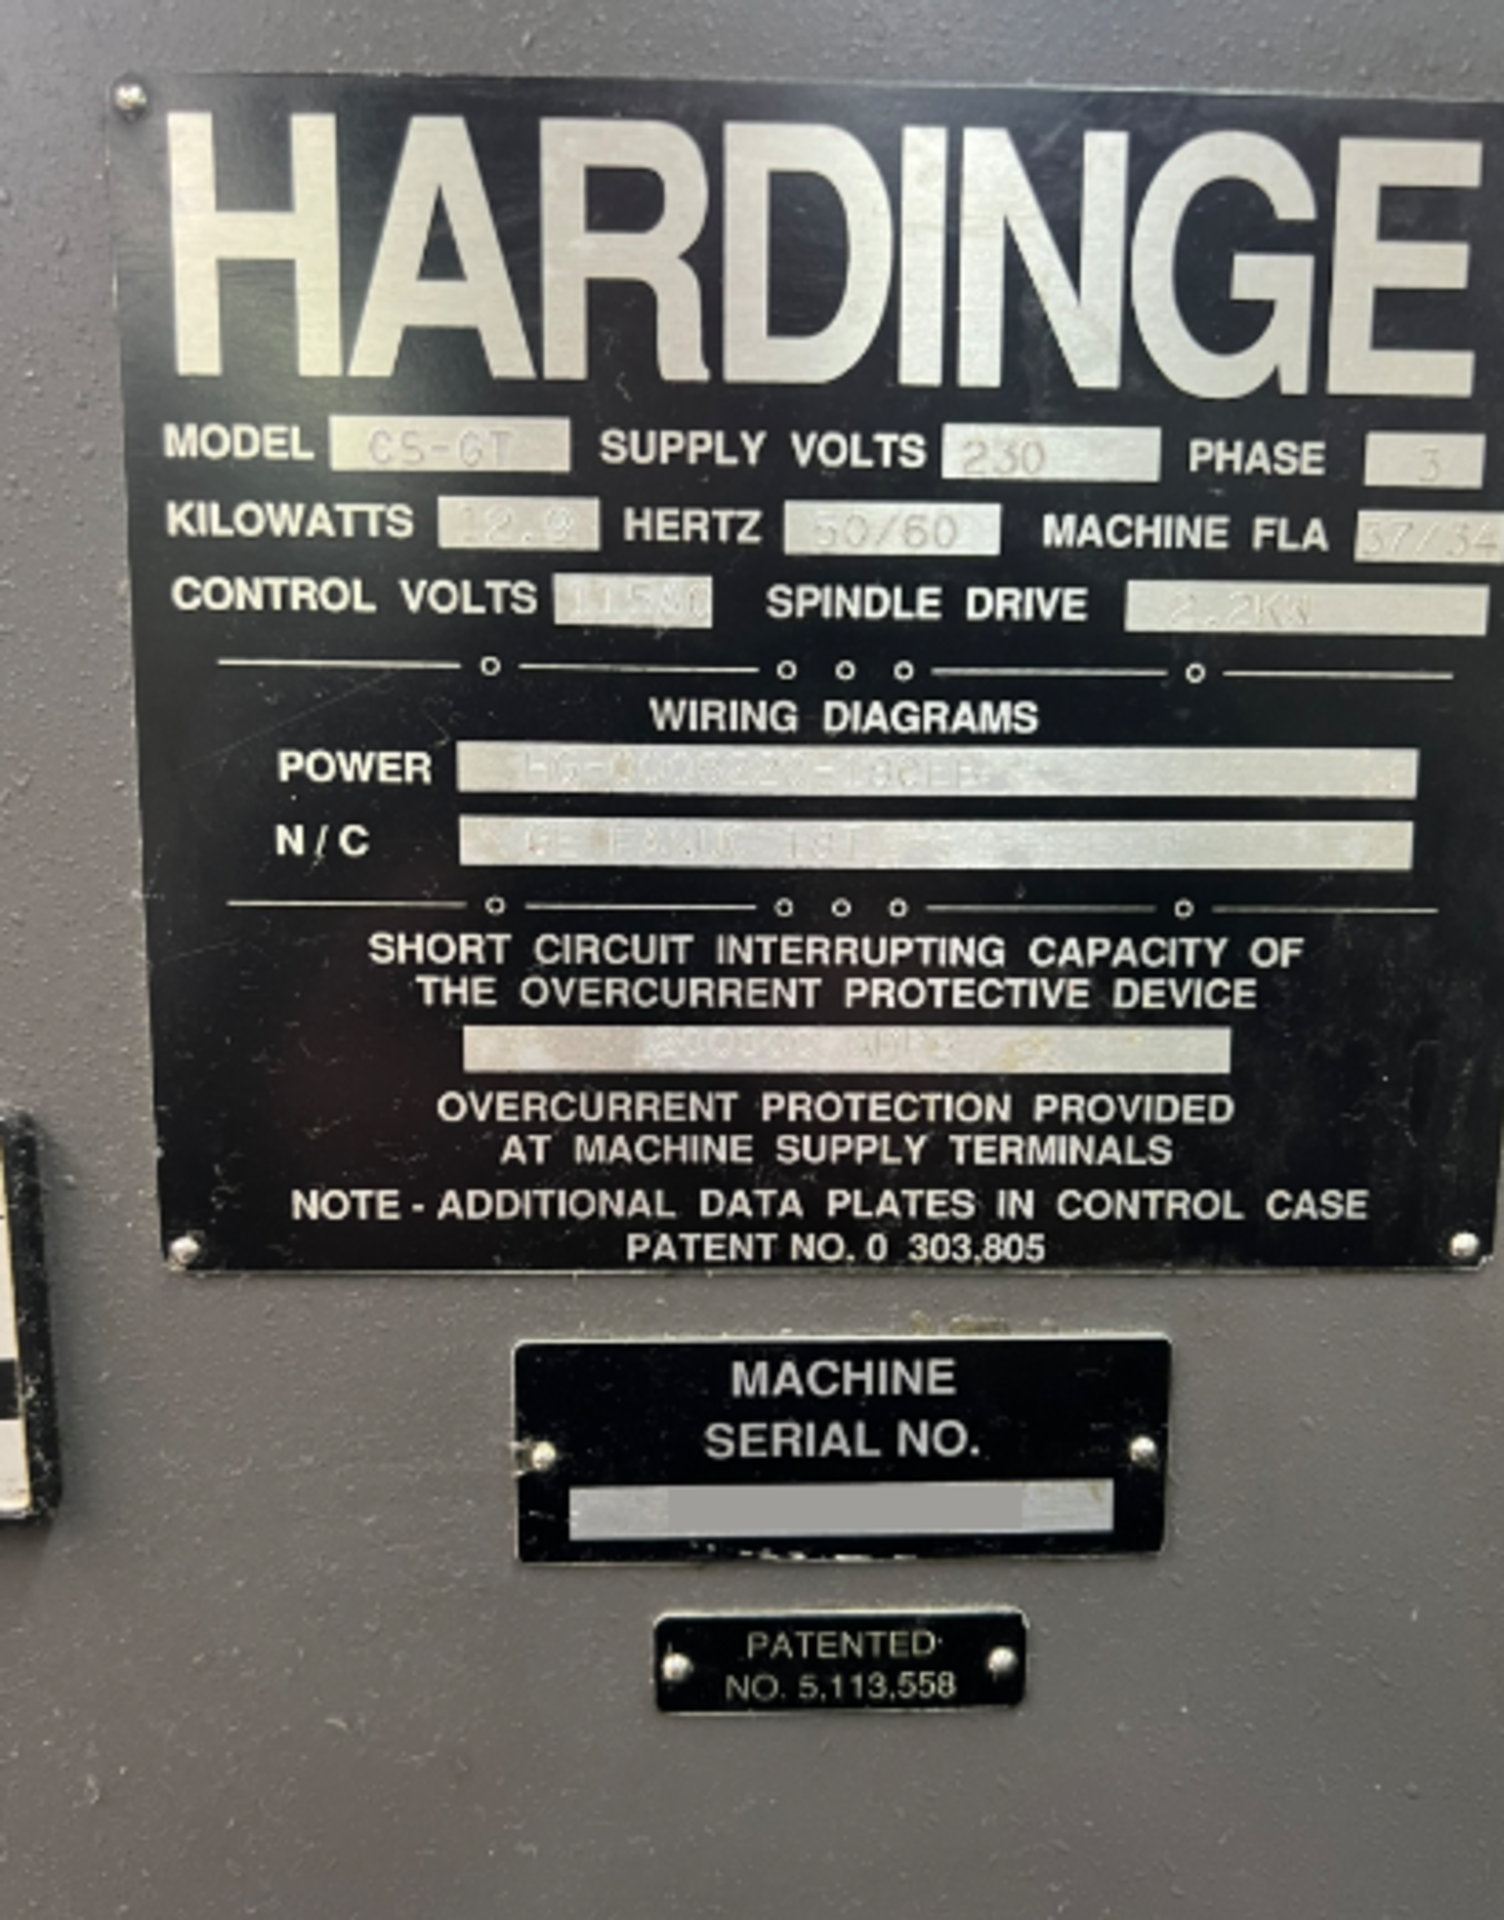 1996 Hardinge GT27-1, CNC Gang Lathe - Image 11 of 13